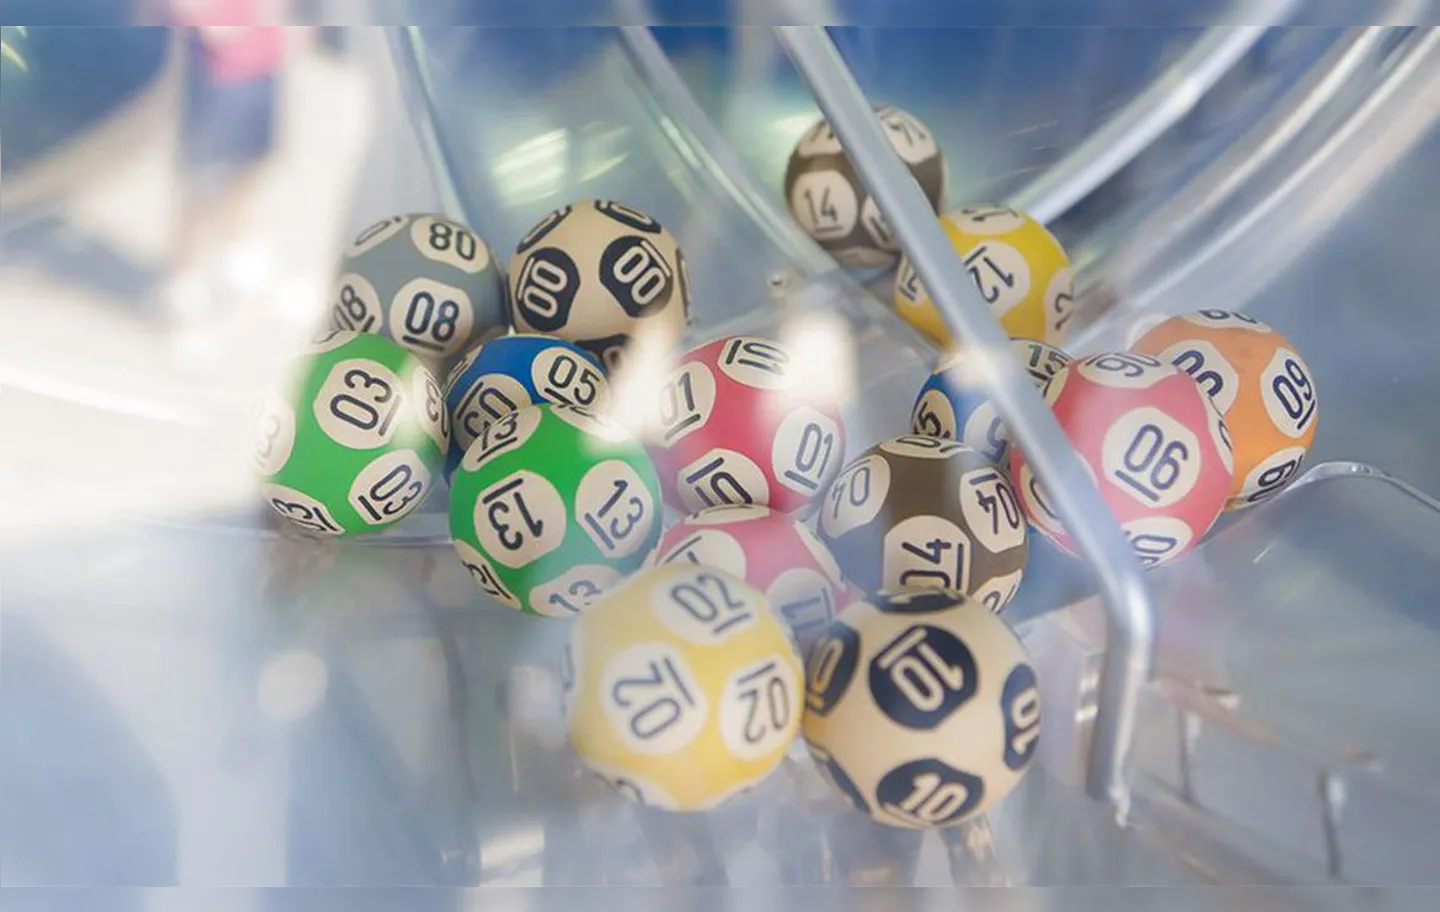 Preço da aposta simples, com cinco números, custa R$ 2 | Foto: Divulgação | Loterias Caixa